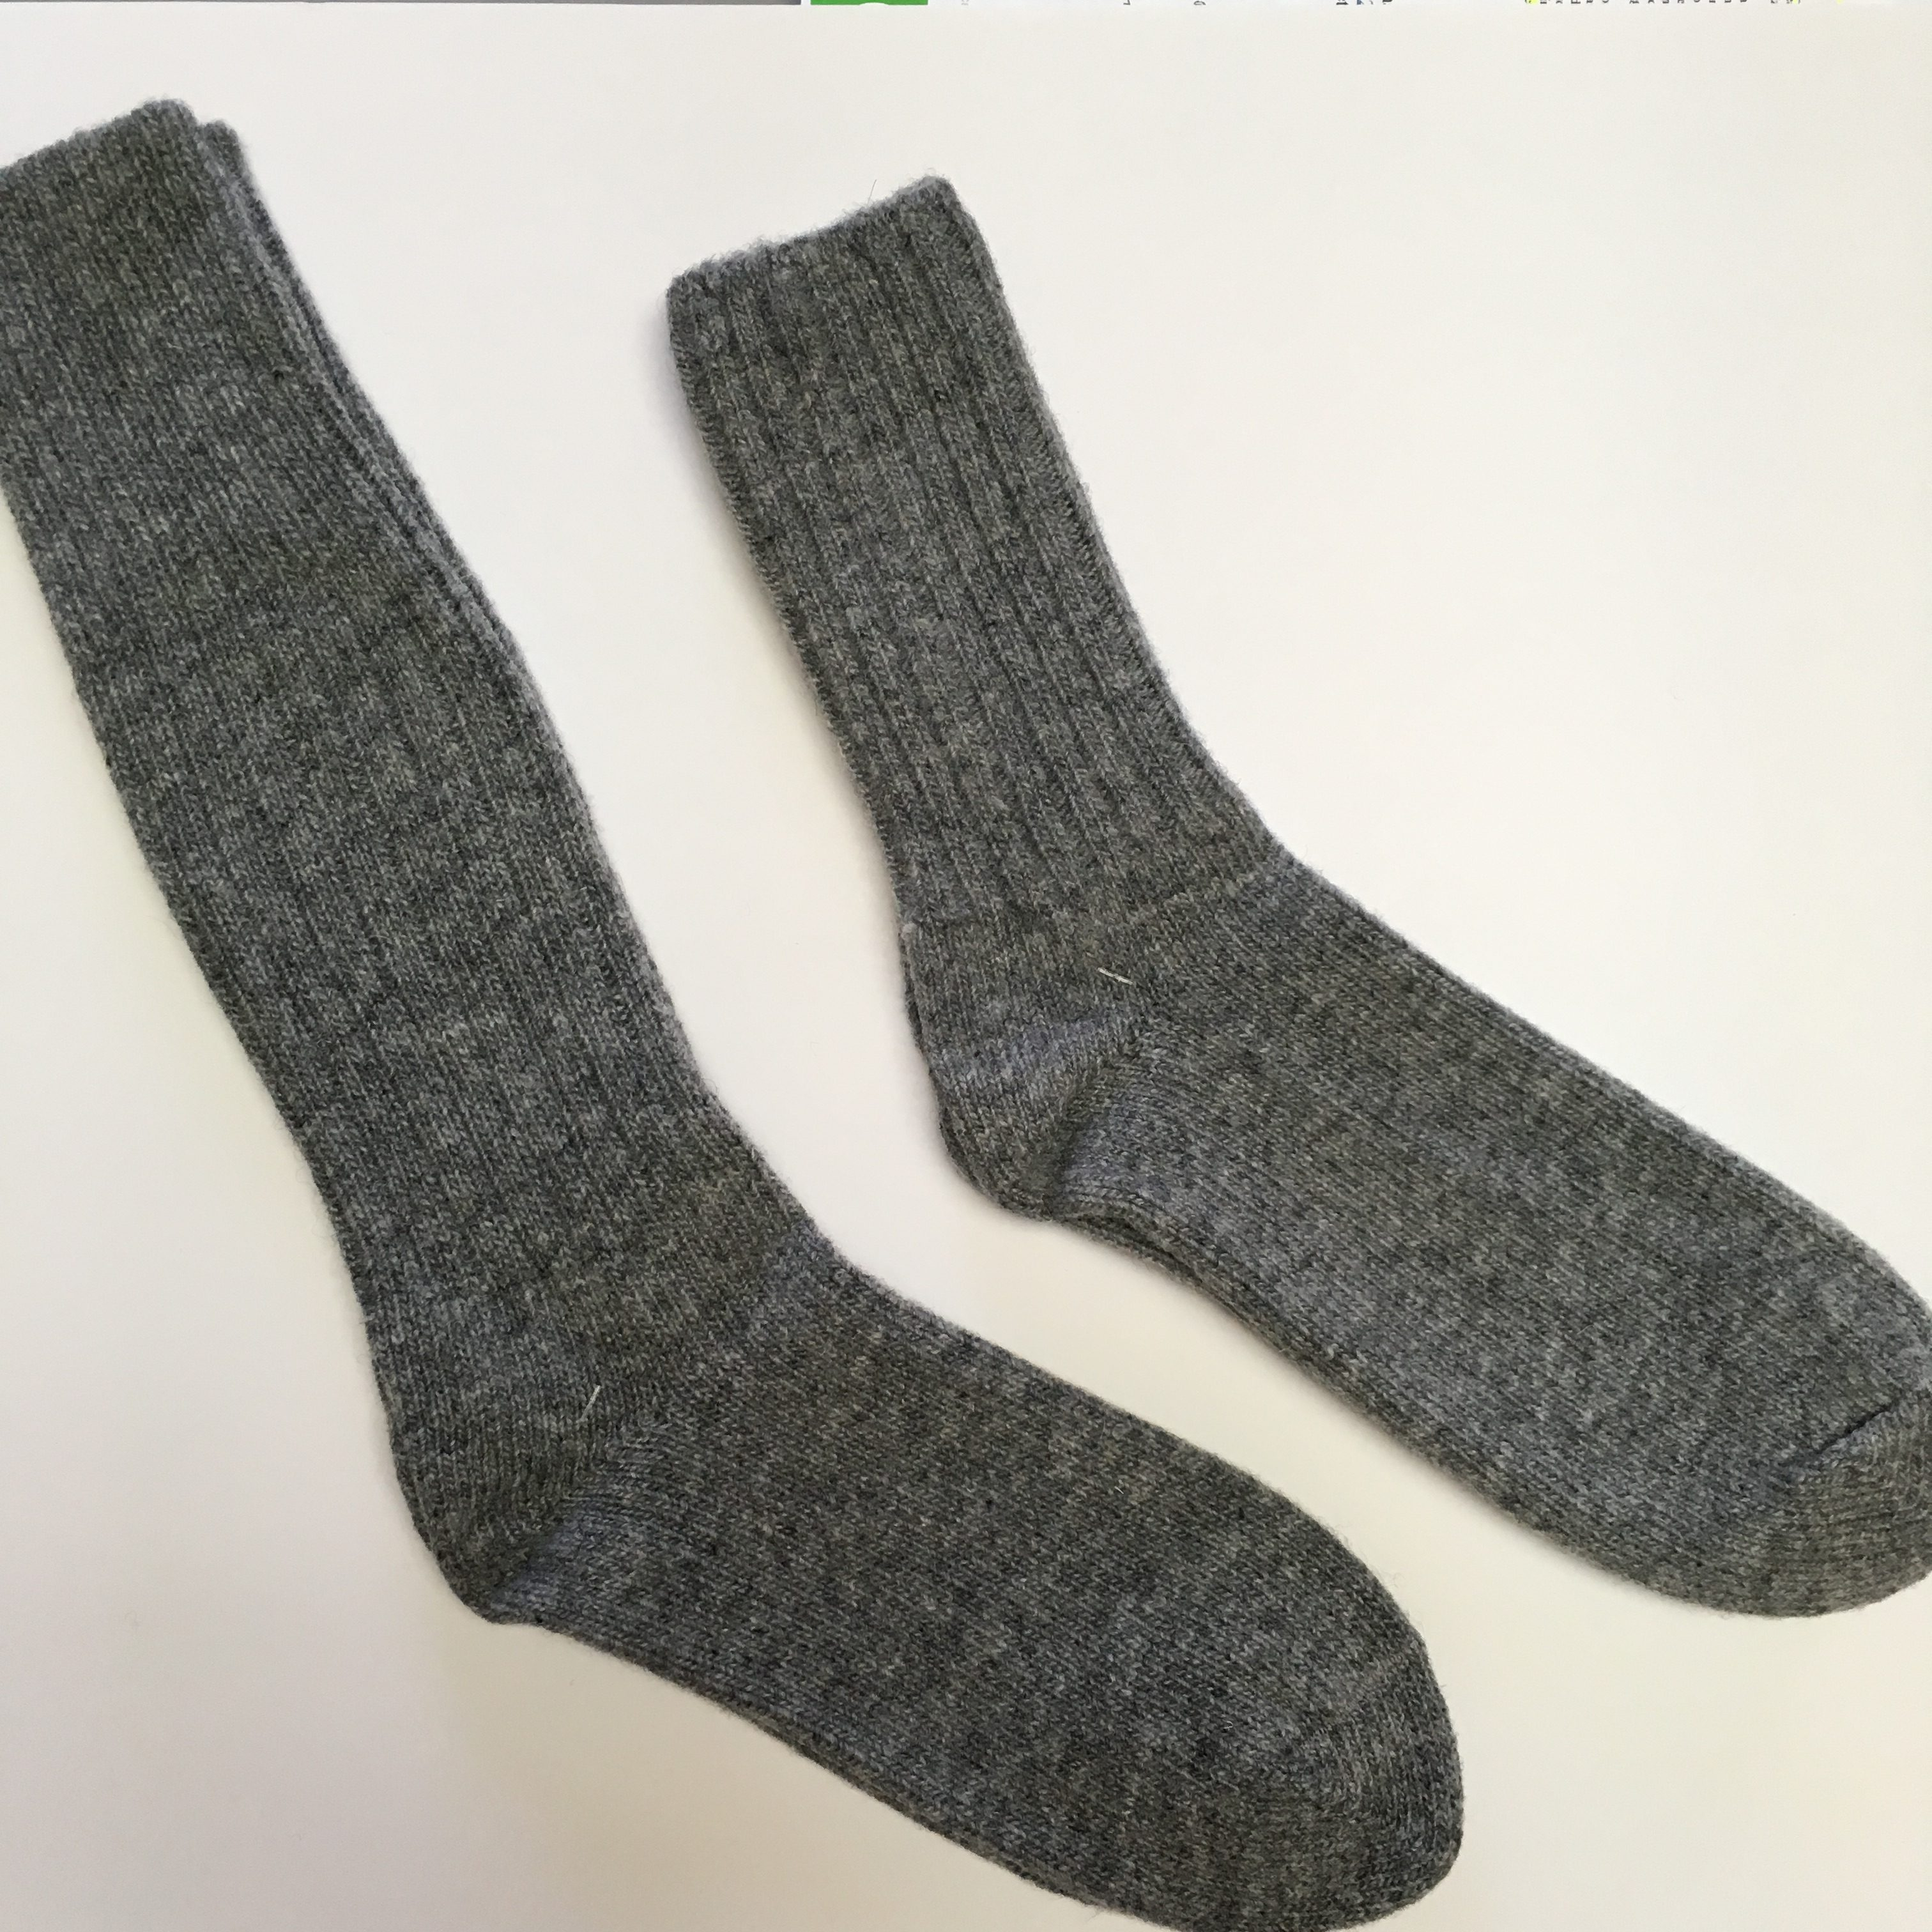 27+ Amazing Photo of Machine Knit Sock Pattern - davesimpson.info